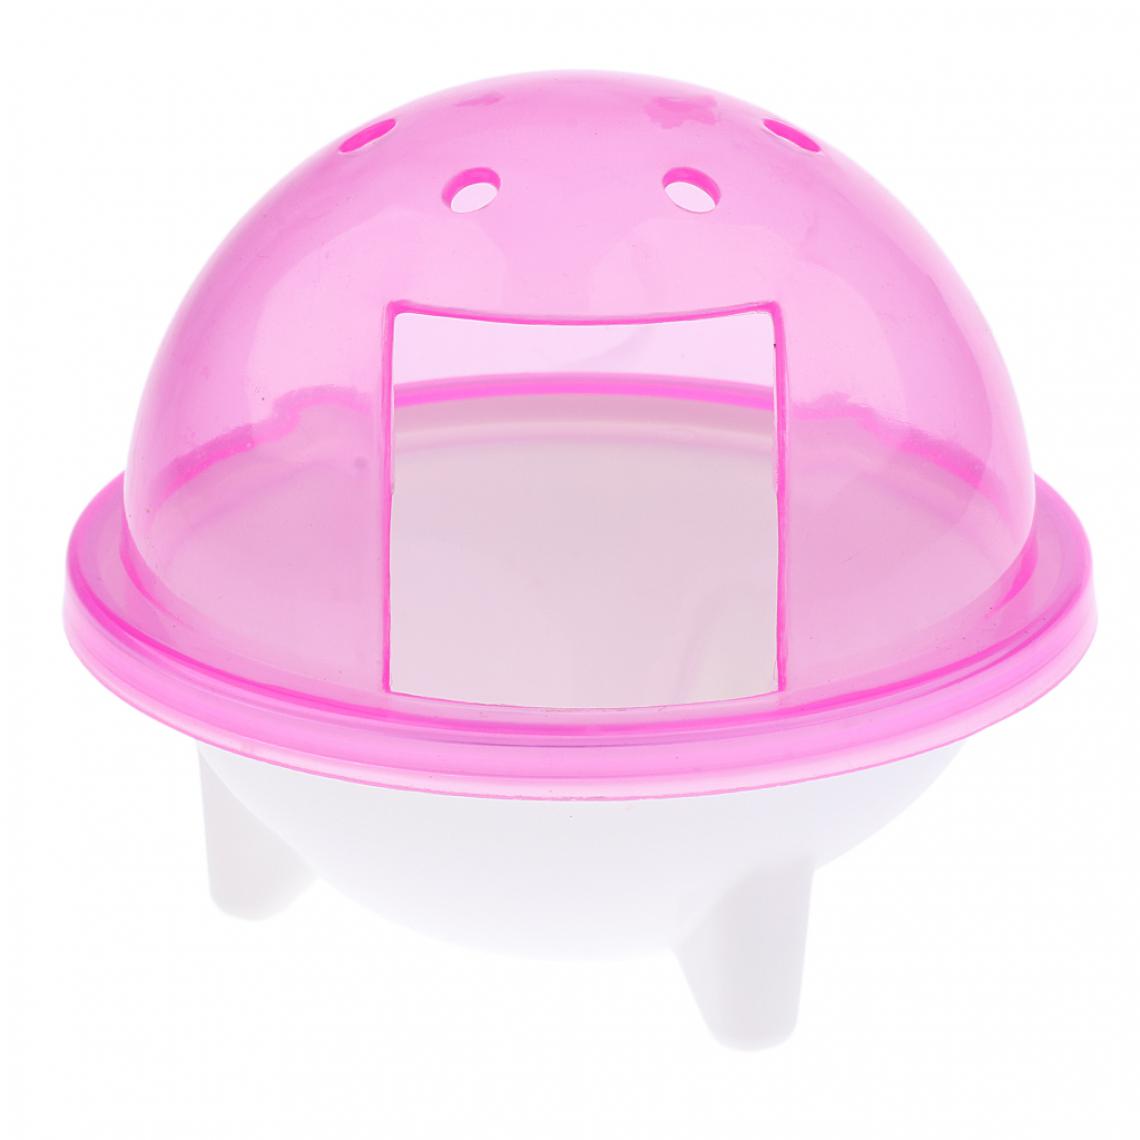 marque generique - UFO hamster gerbille pet salle de bain cage bain sable pelle jouet toilette rose - Kits créatifs